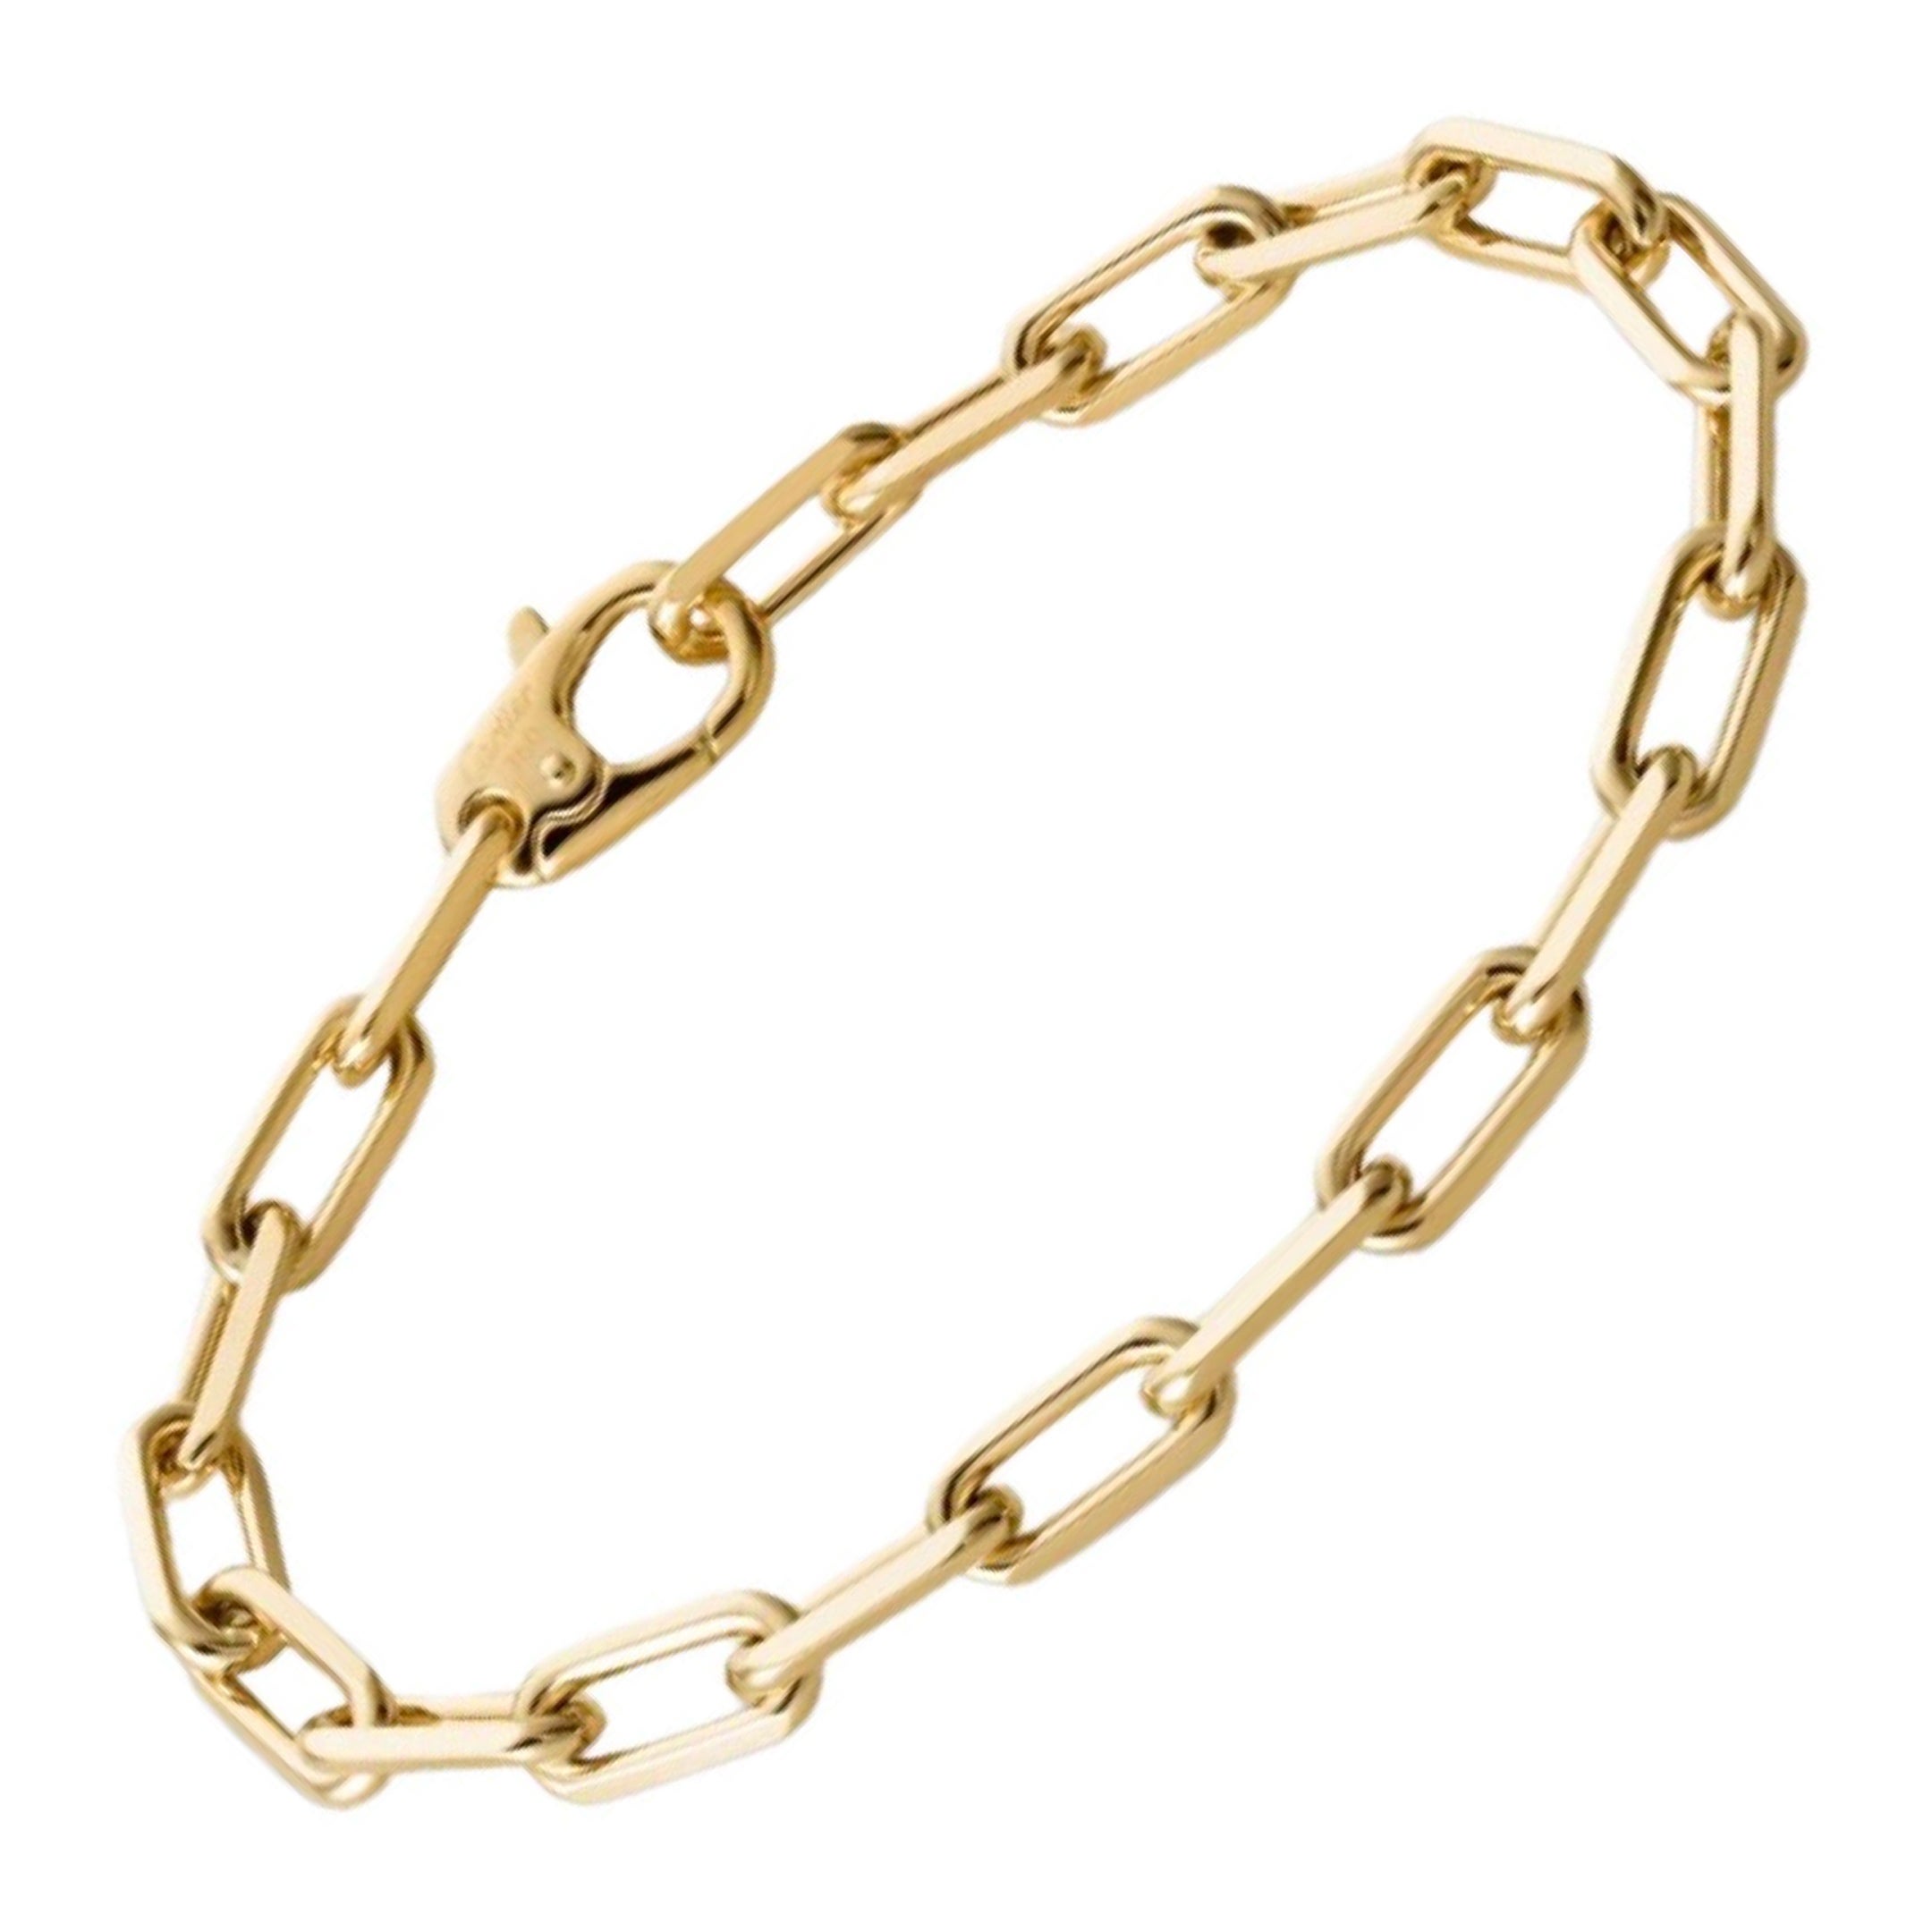 Cartier Santos-Dumont Chain Link 7.75in Bracelet in 18k Yellow Gold 19.4g